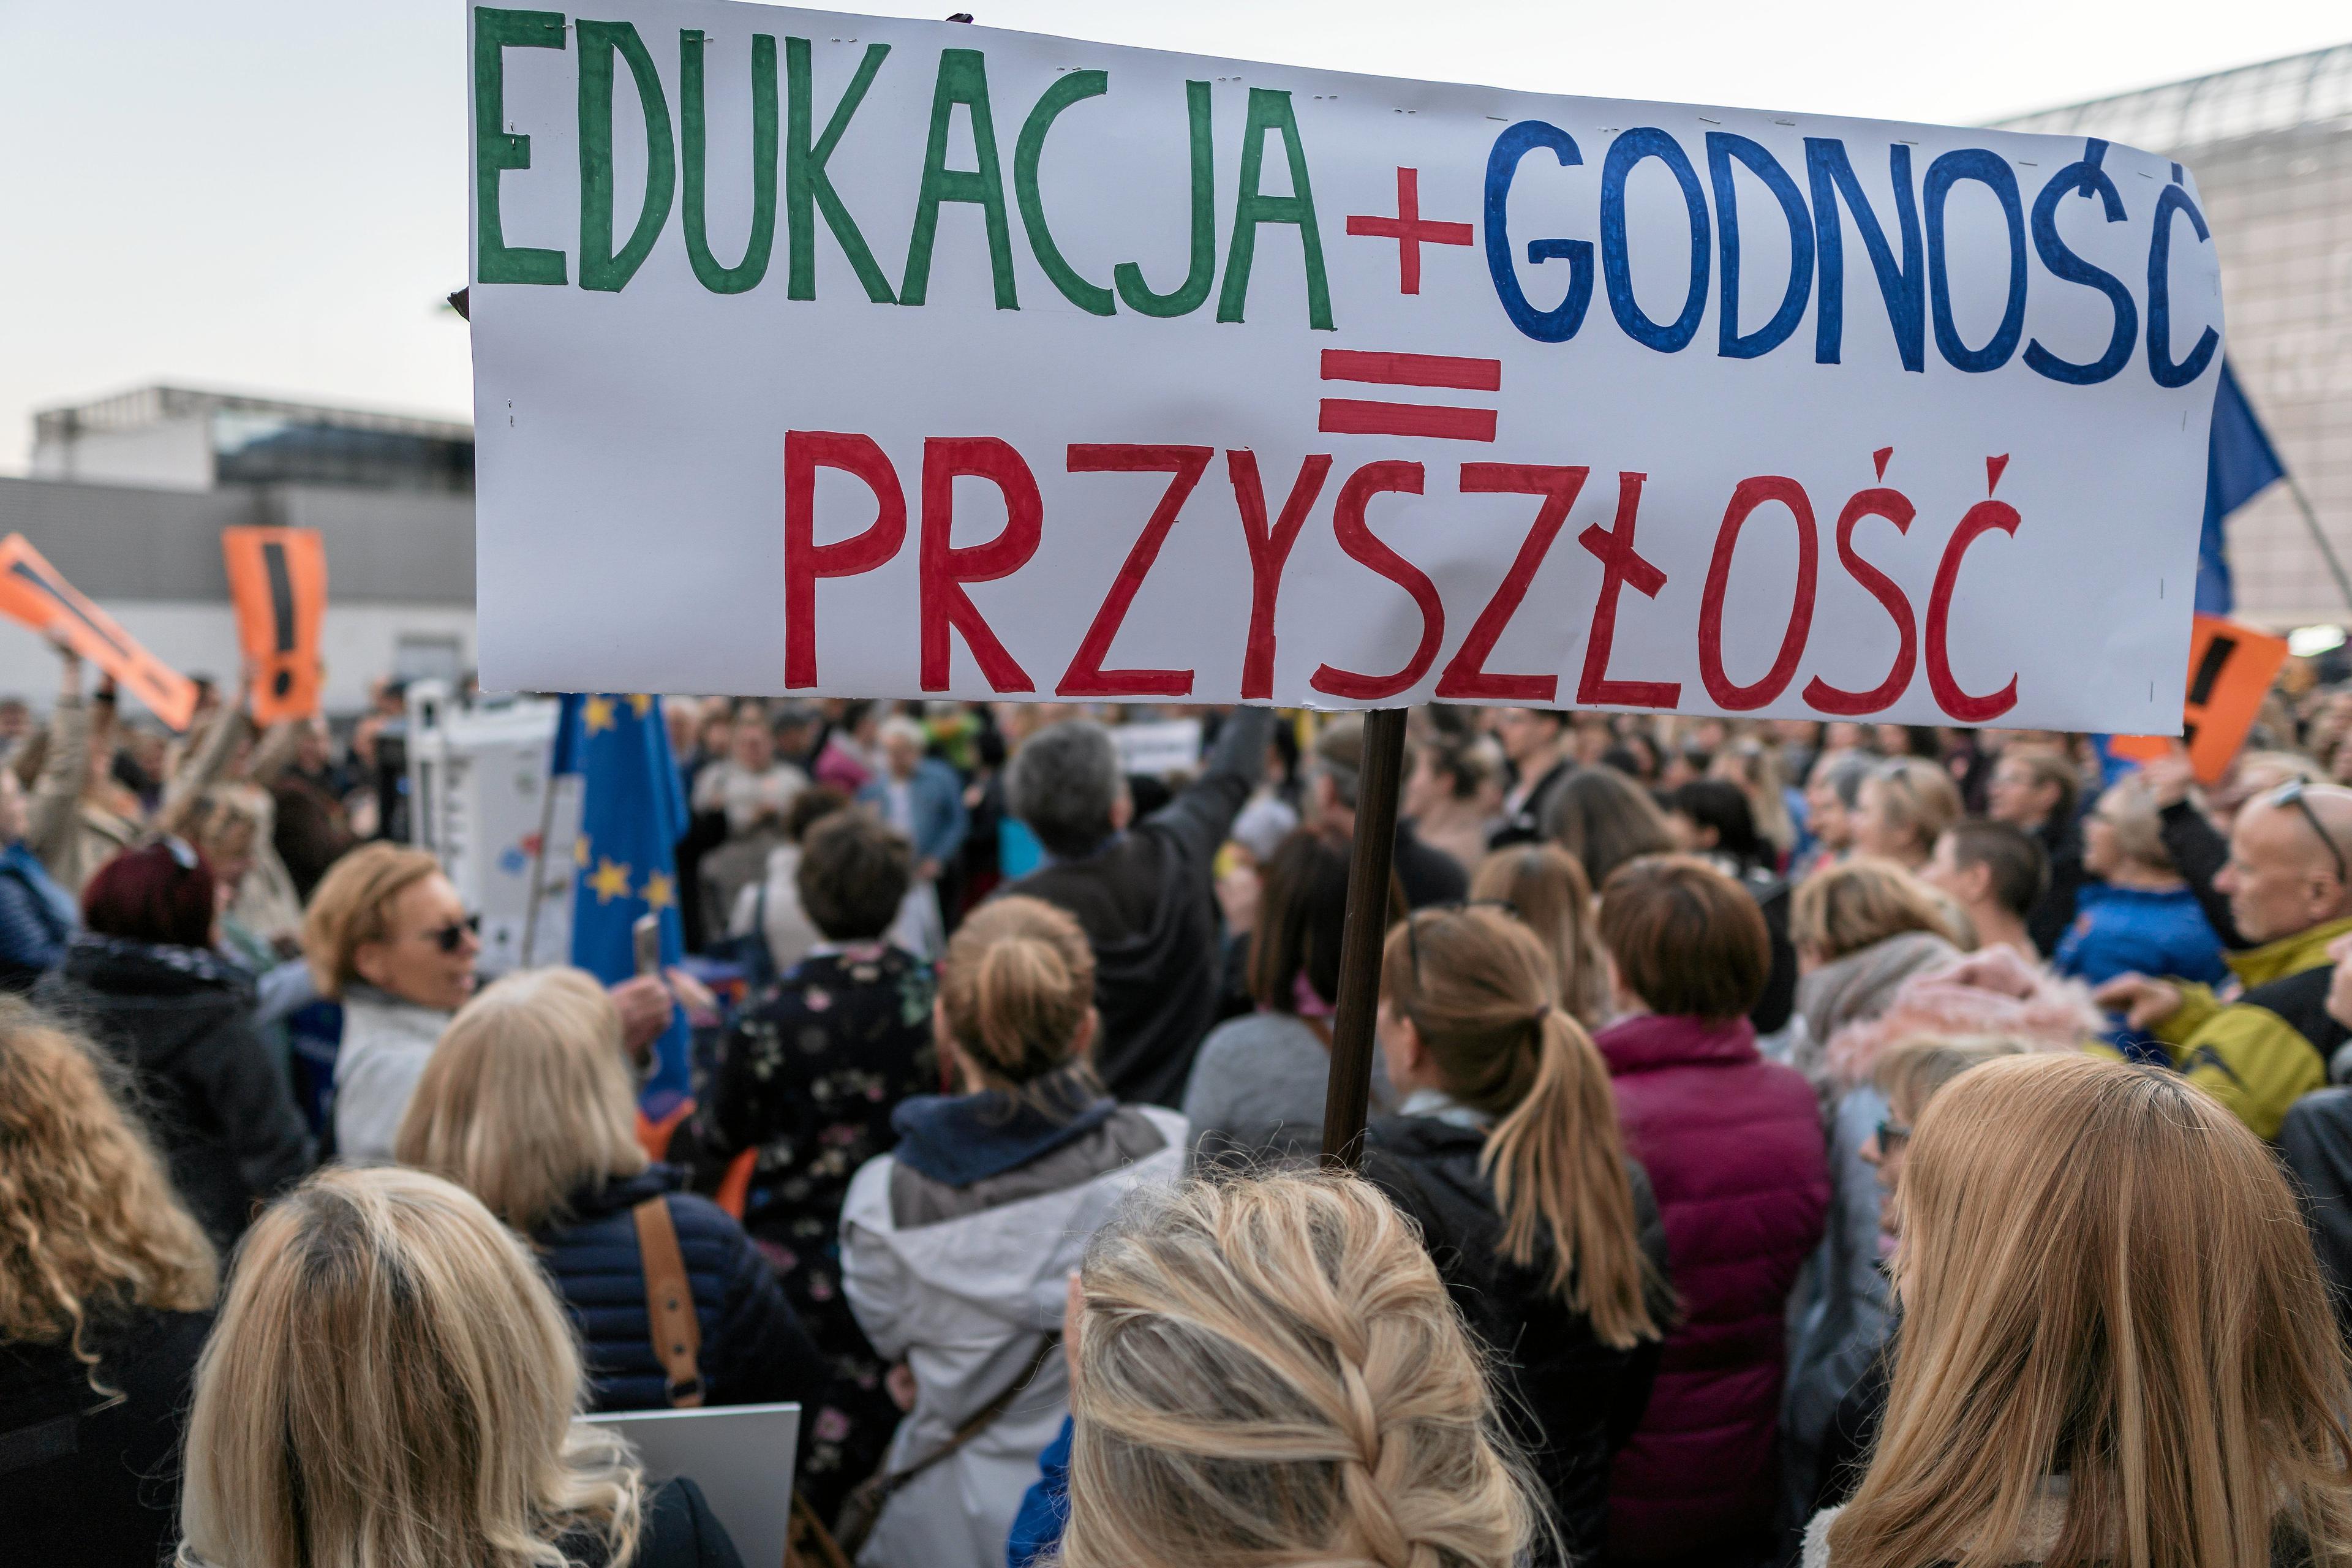 Nauczciele protestują z transparentem "Edukacja+Godność=Przyszłość"